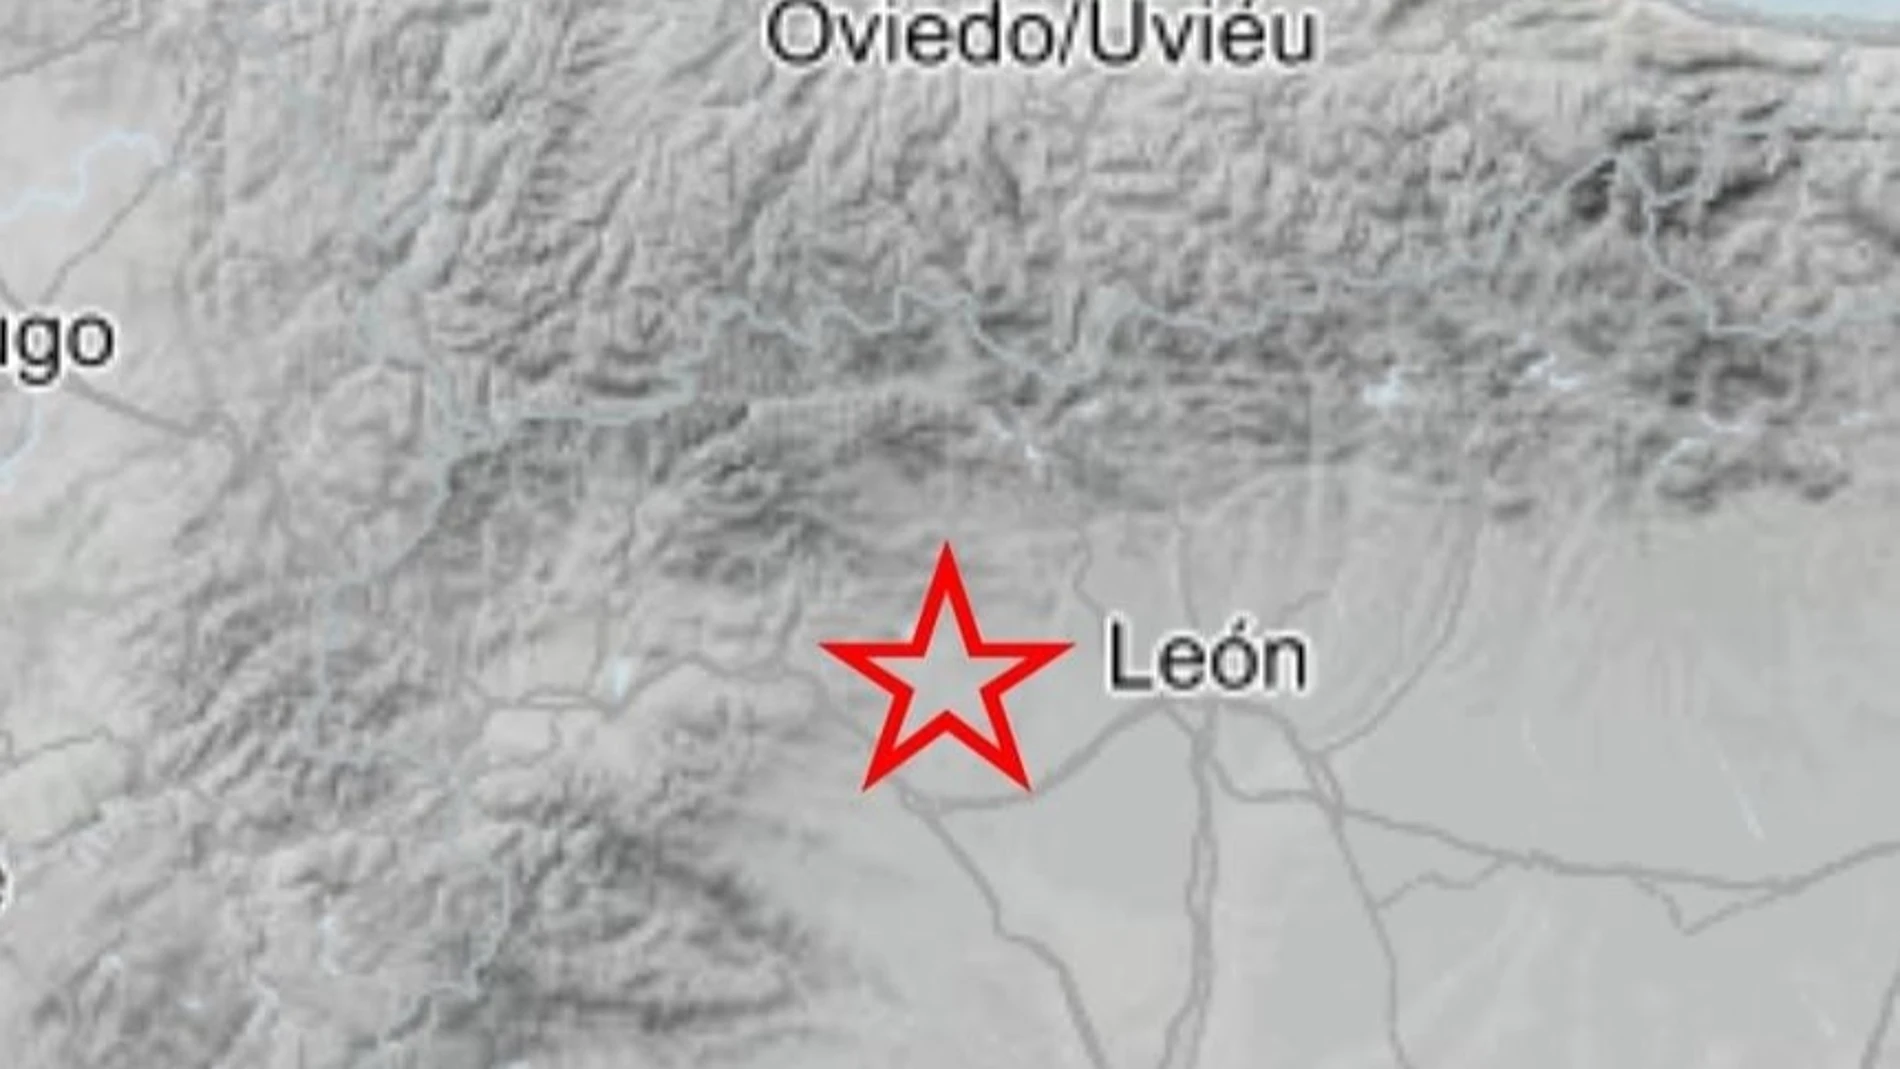 León registra dos terremotos seguidos de magnitud 4,3 y 3,8 